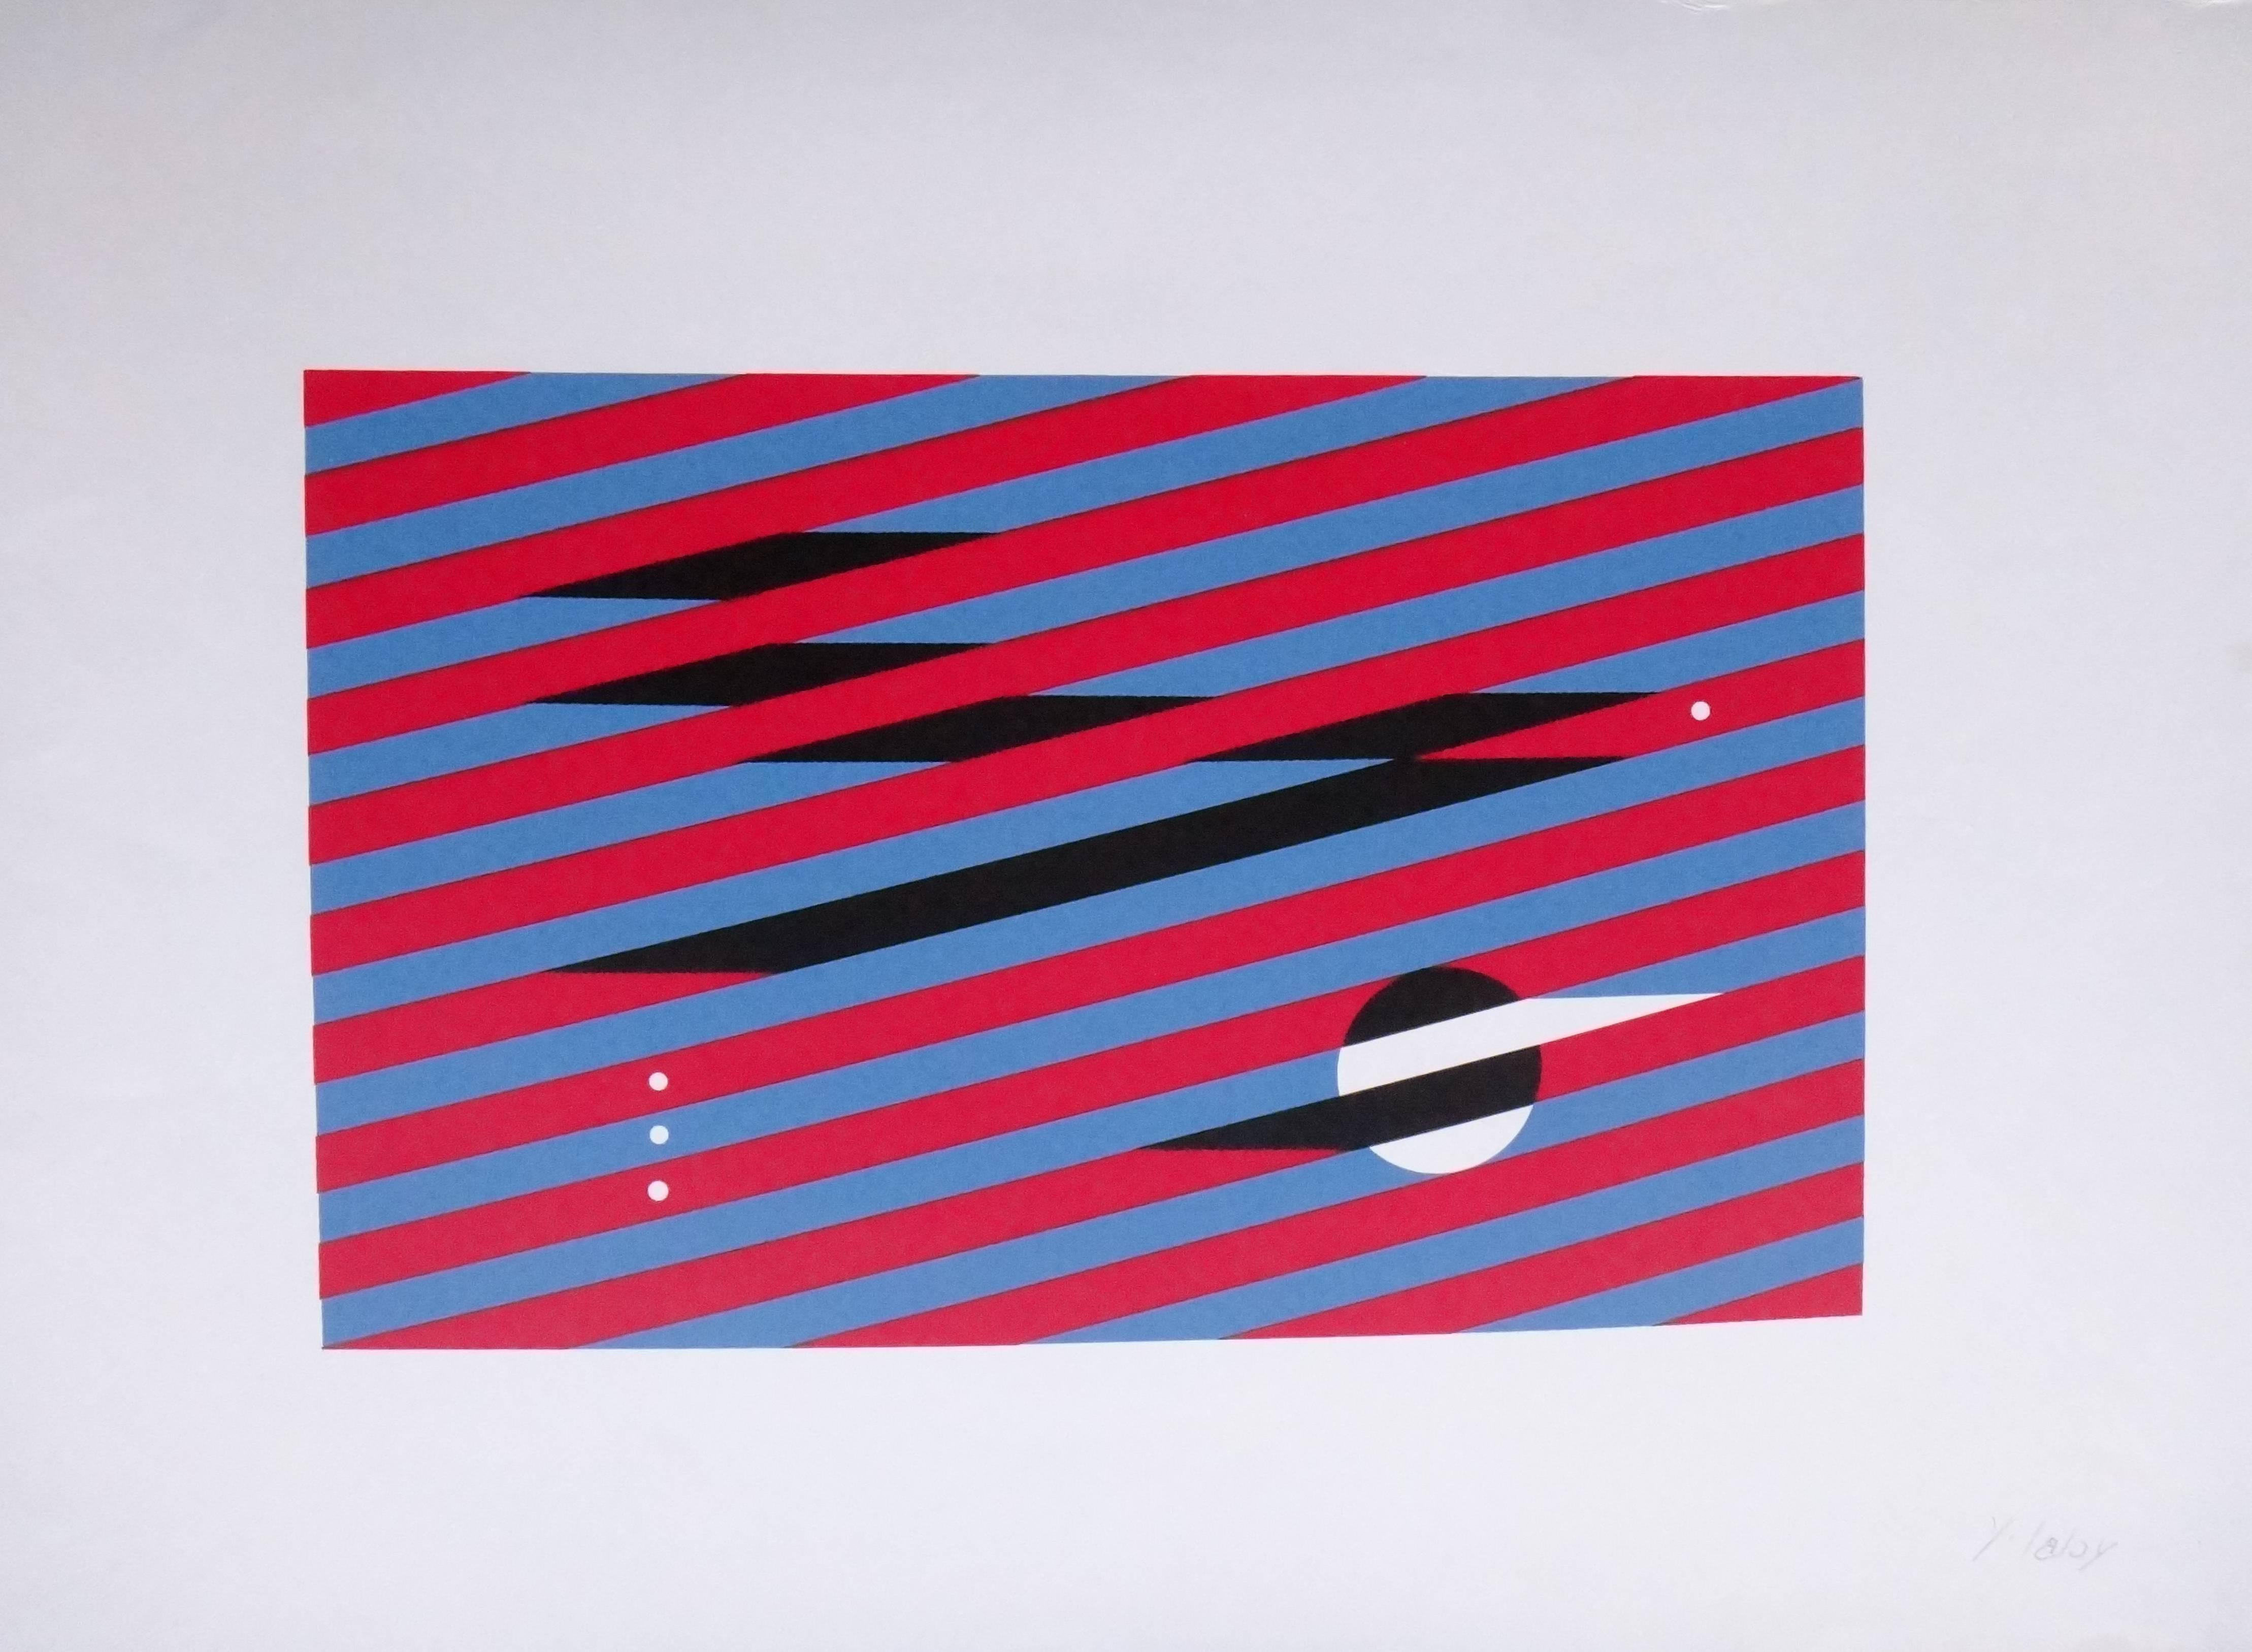 Farbige Serigrafie auf Karton, um 1970. Von Yves Laloy ( 1920-1999 ), Französisch. Signiert unten rechts: Y. Laloy
Abmessungen des Blattes: 16.54 x 23.74 in ( 42 x 60,3 cm ). Ungerahmt